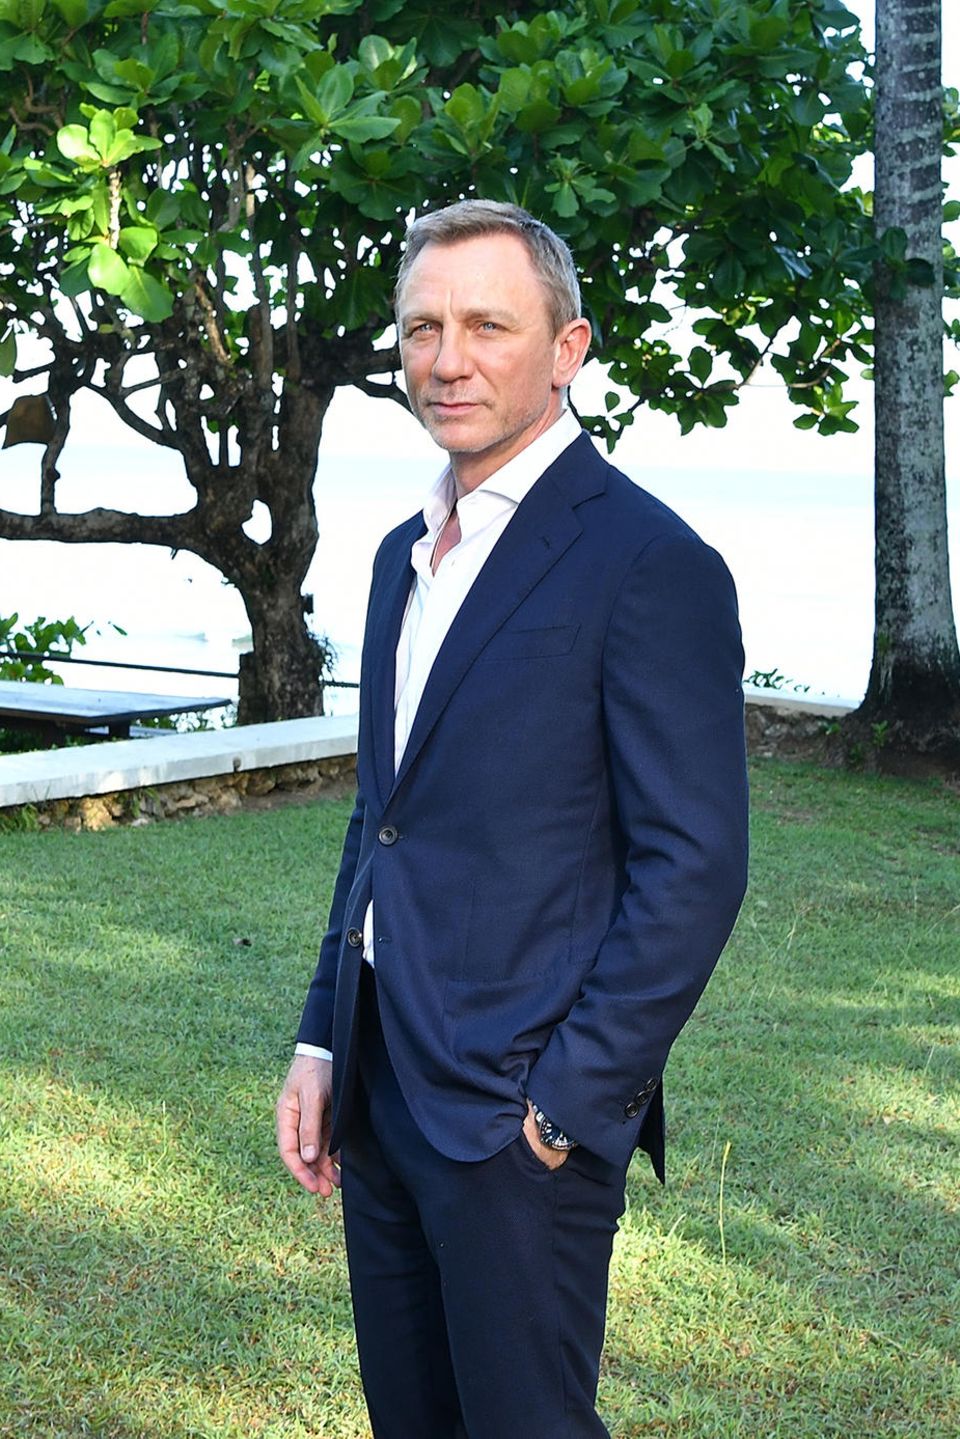 Immerhin etwas: Zumindest der Anzug sitzt bei Daniel Craig alias James Bond so gut wie eh und je